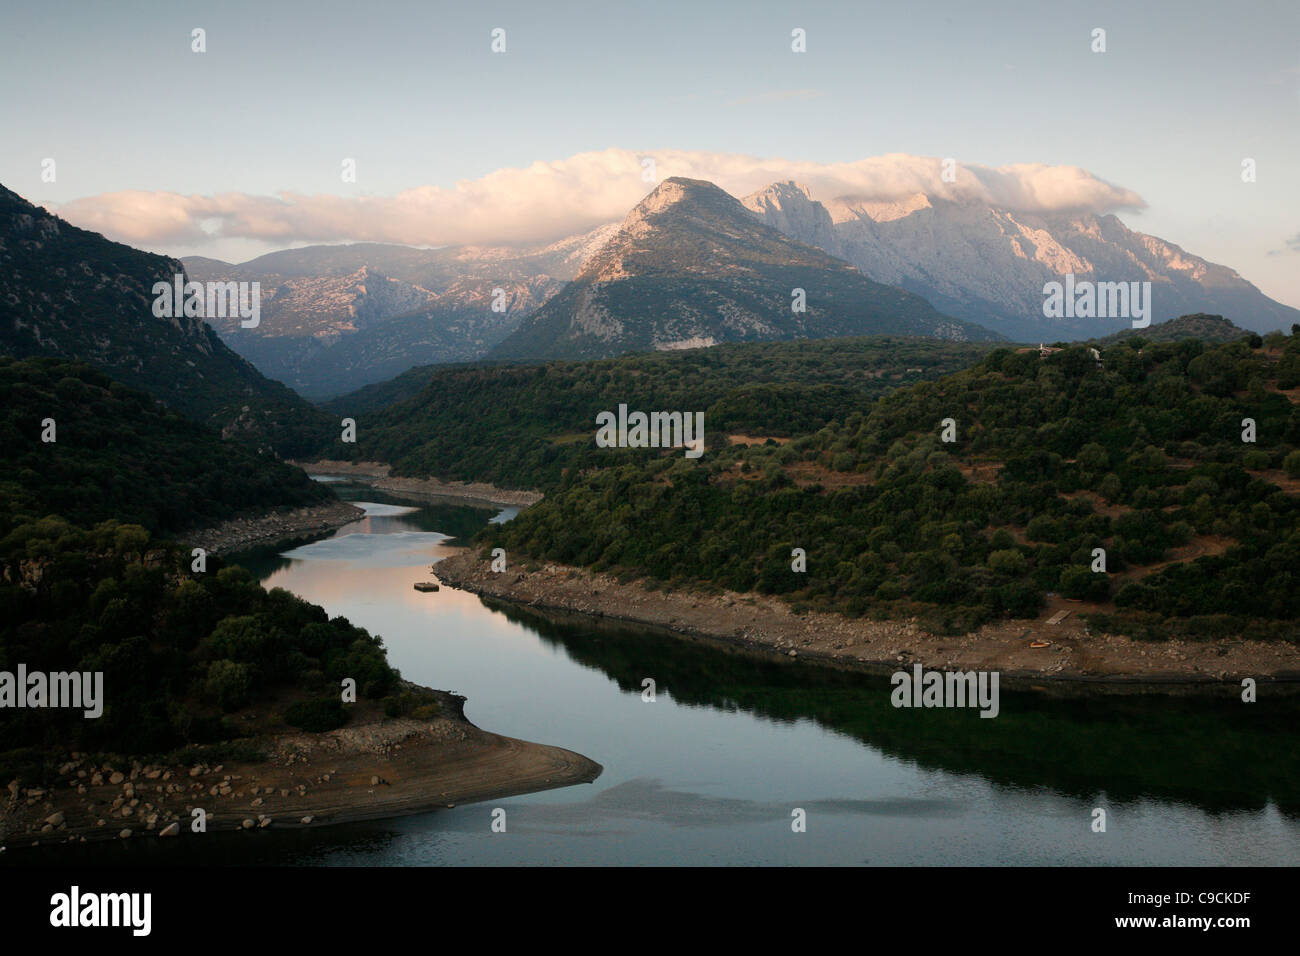 Supramonte de paisaje de la cordillera y el río Cedrino, provincia de Nuoro, Cerdeña, Italia. Foto de stock